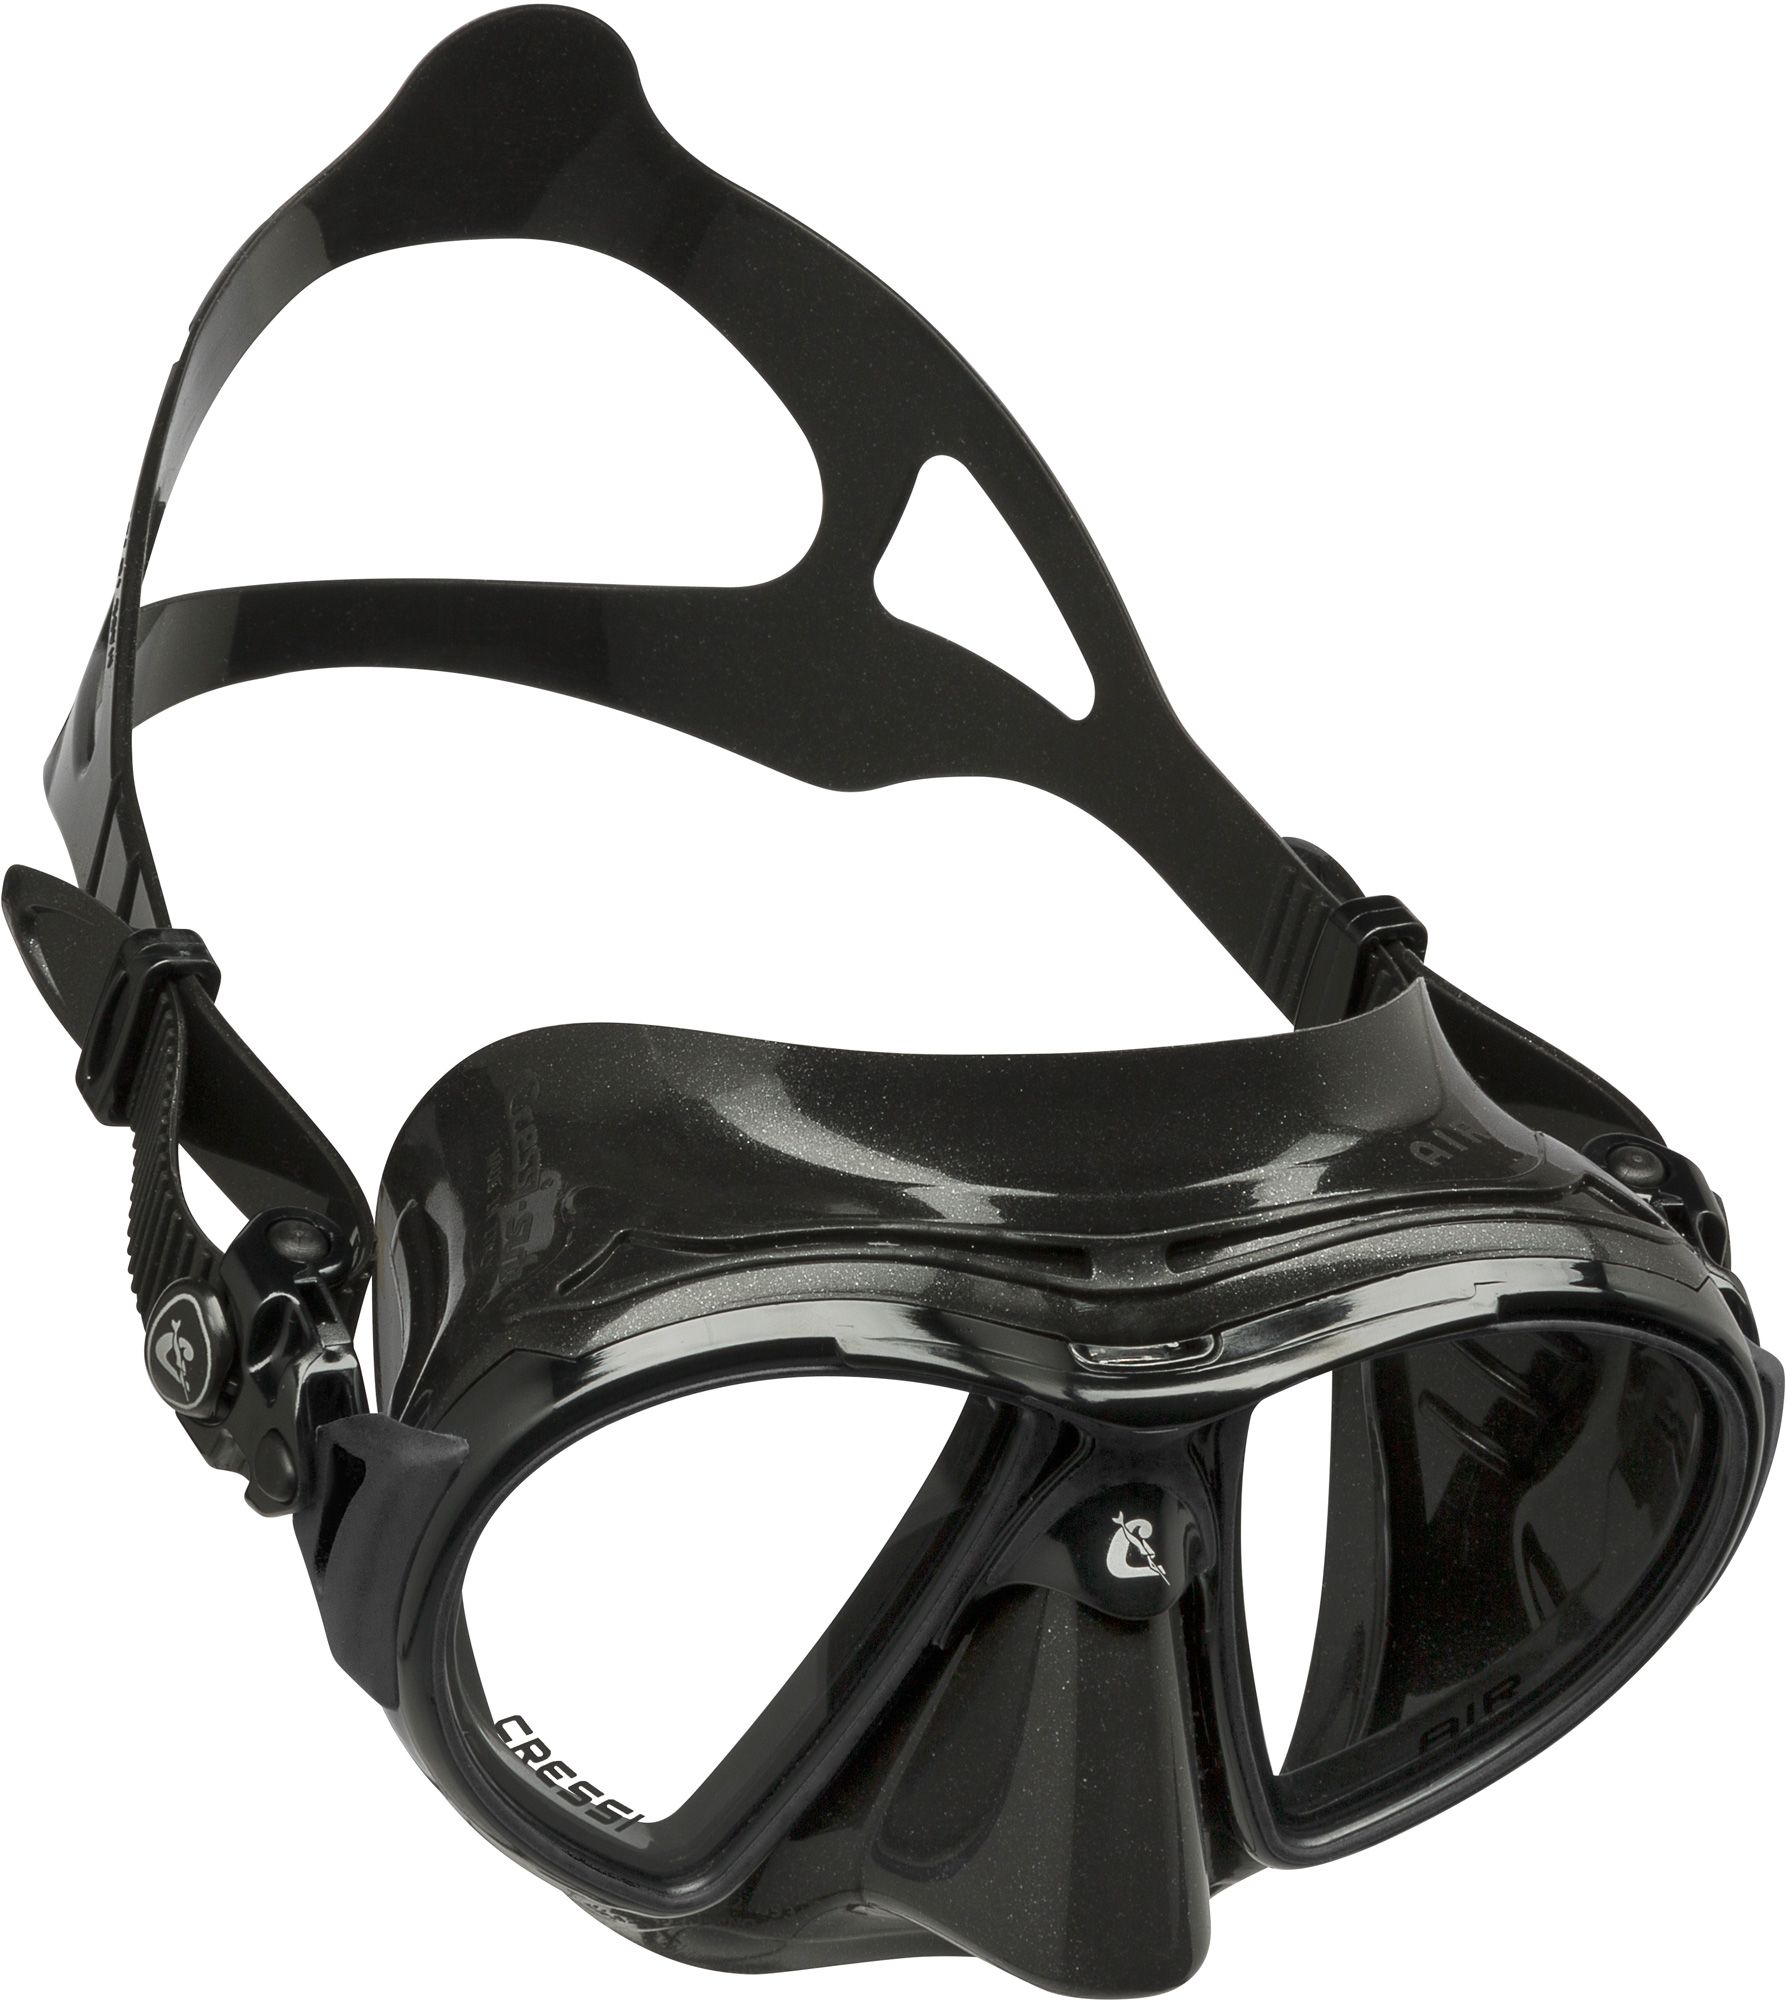 Photos - Swimming Mask Cressi Sub Cressi Air Scuba Mask, Black/Black 20CREARXXXXXXXXXXSWE 